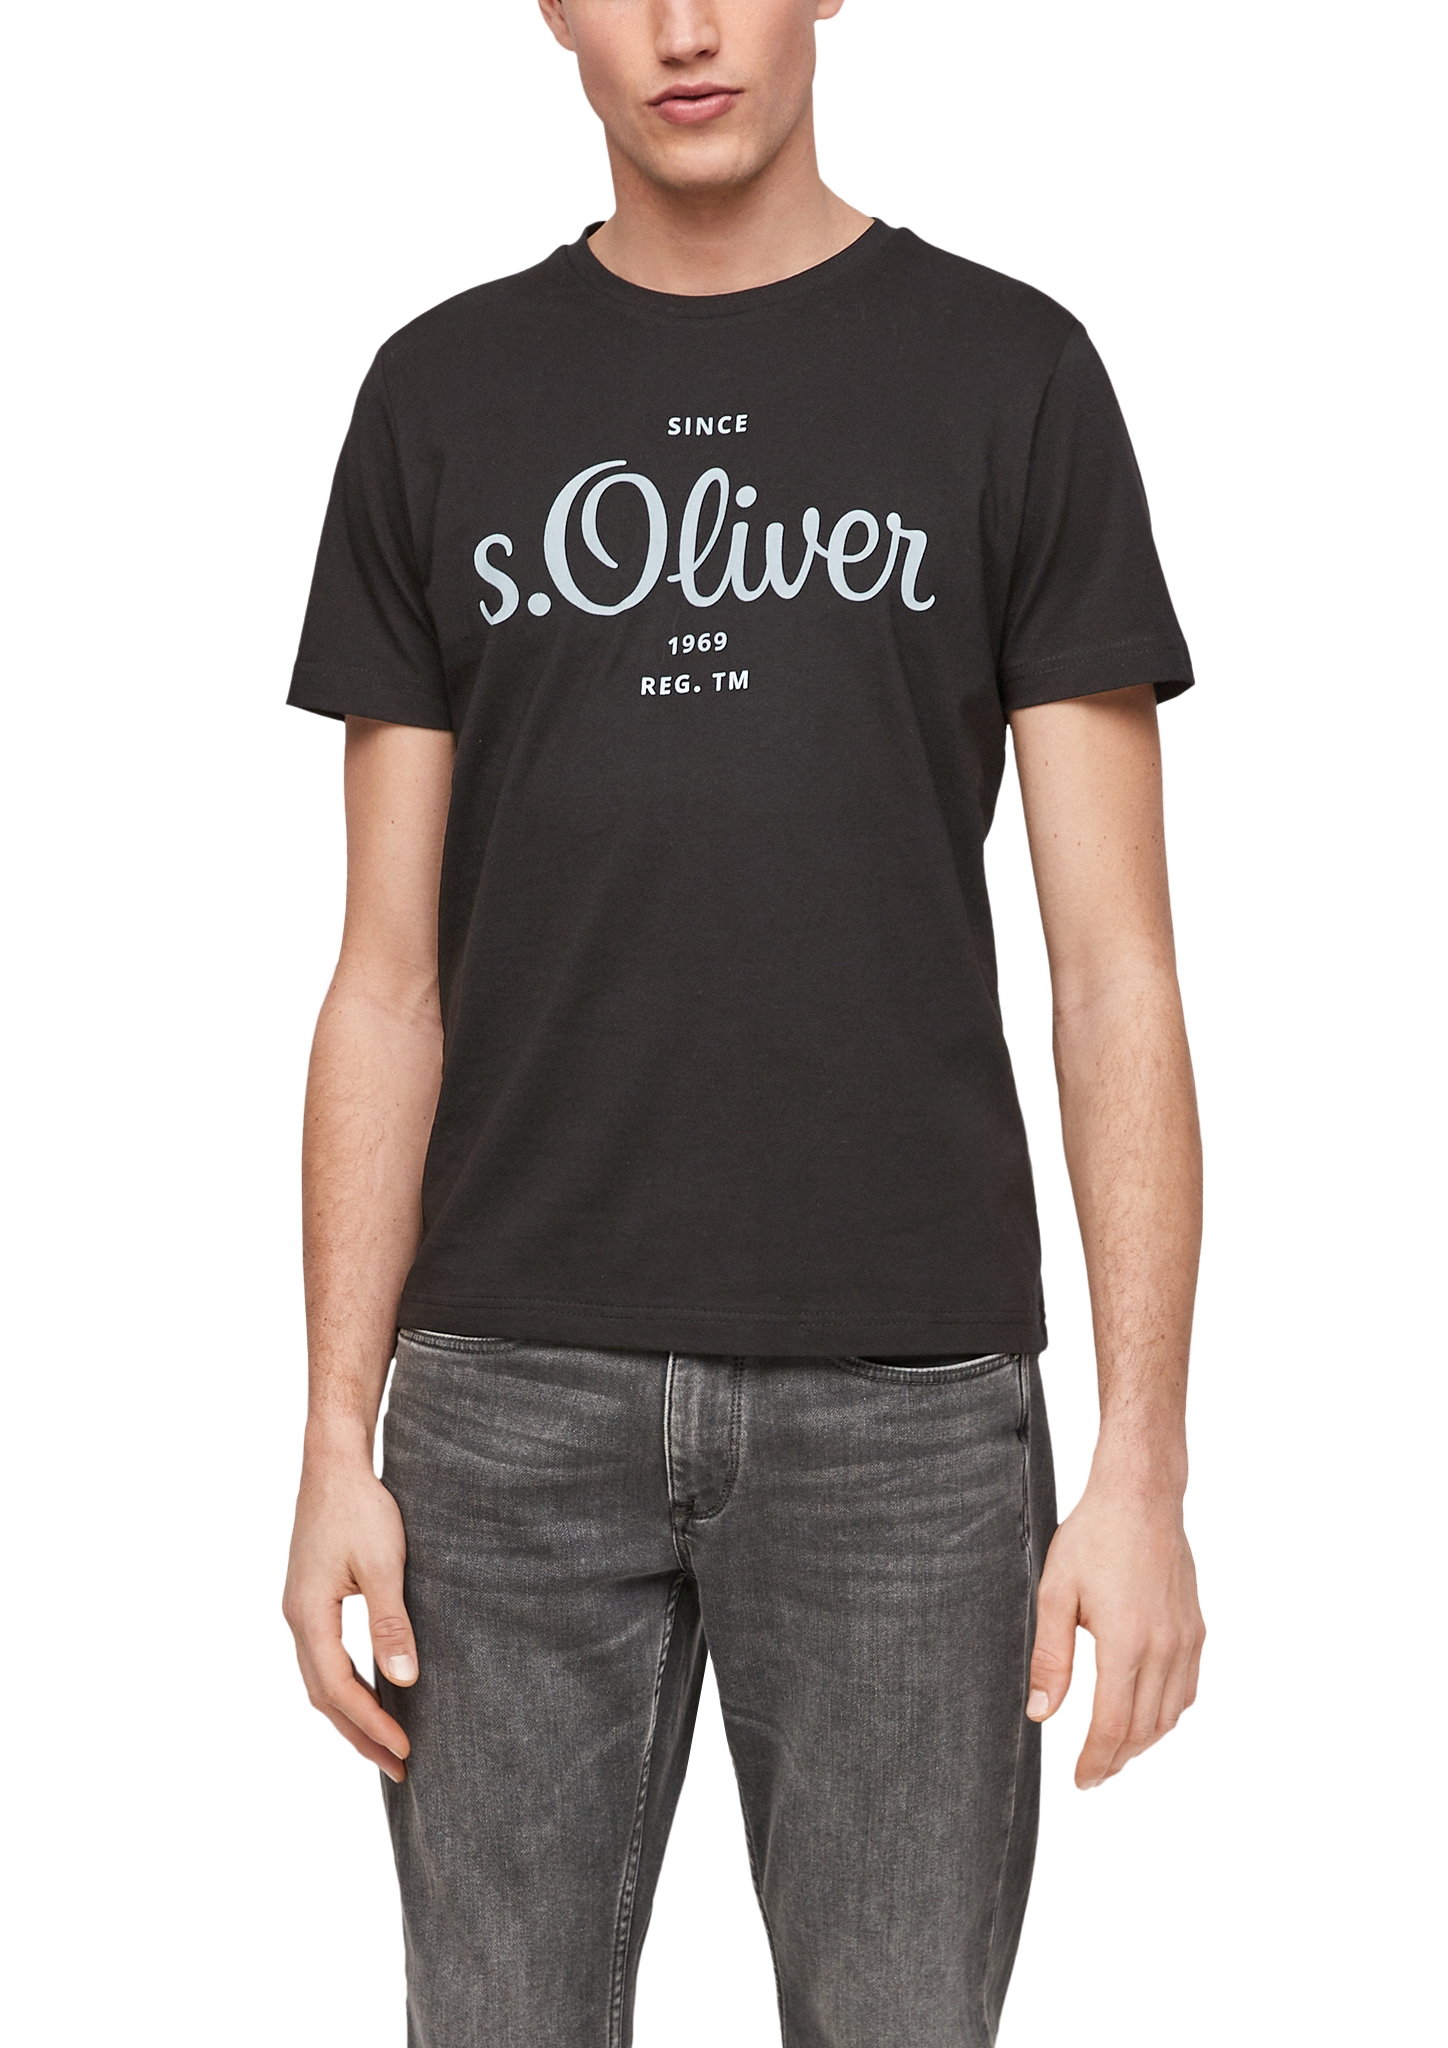 s.Oliver pánské triko s krátkým rukávem 03.899.32.6954/9999 Černá M